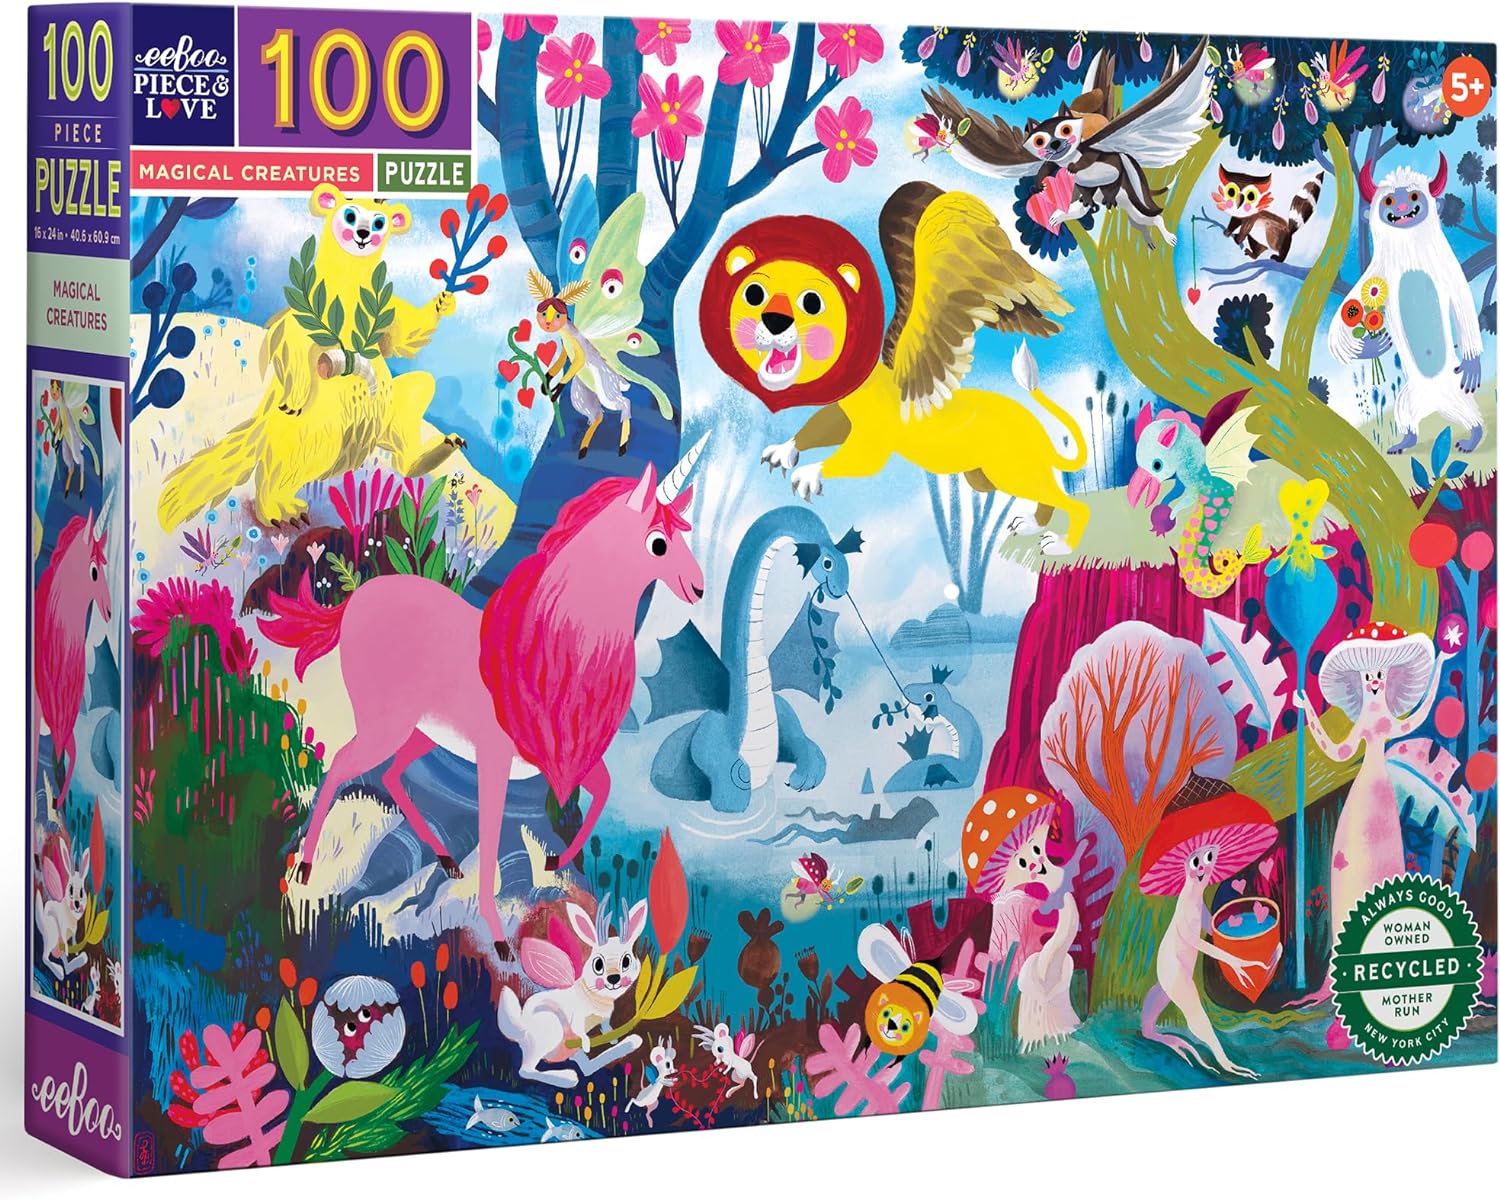 Magical Creatures 100 Pc Puzzle